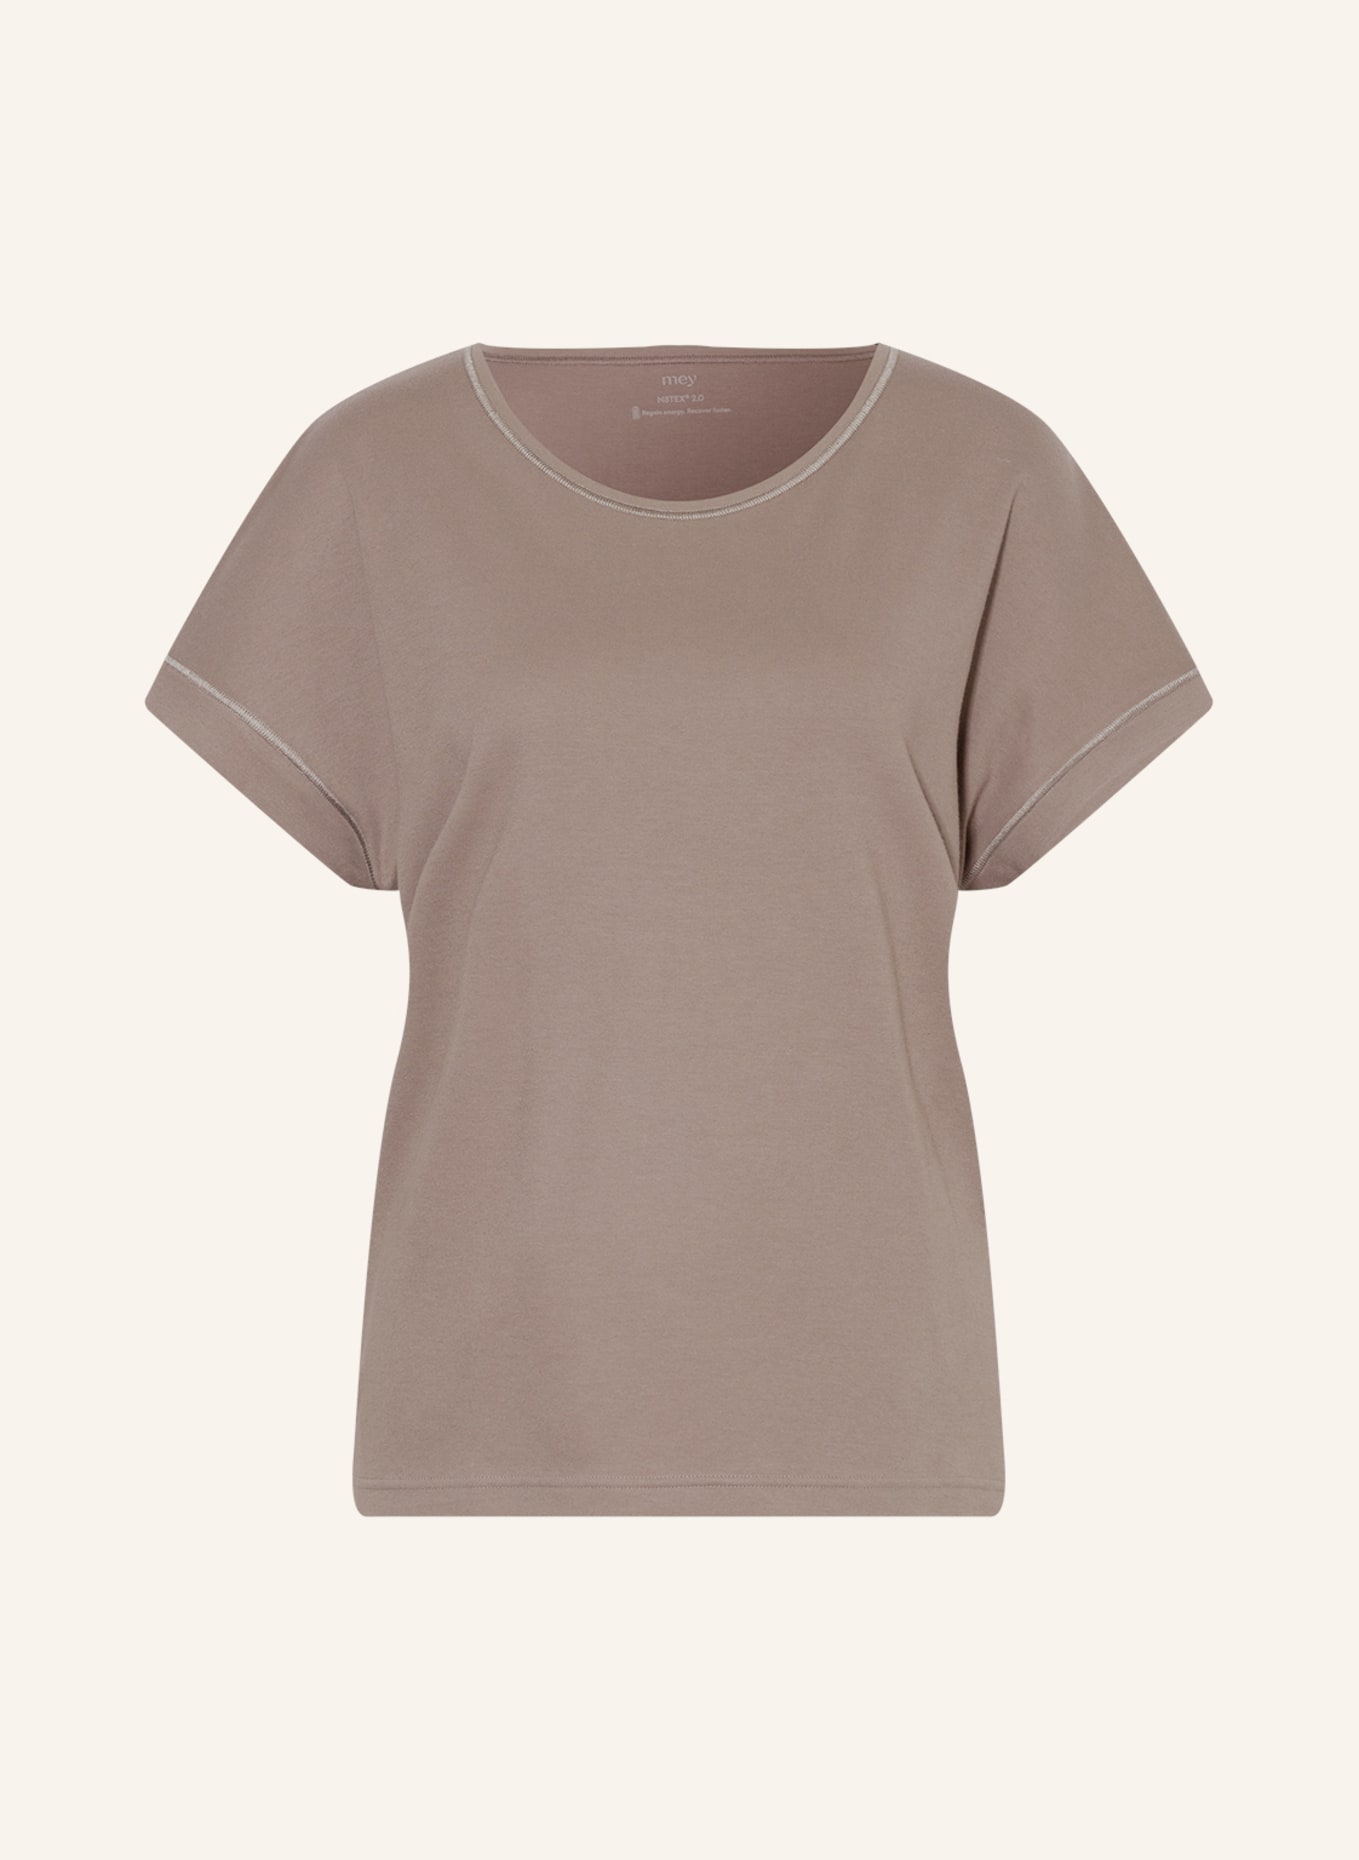 mey Koszulka od piżamy N8TEX 2.0, Kolor: SZAROBRĄZOWY (Obrazek 1)